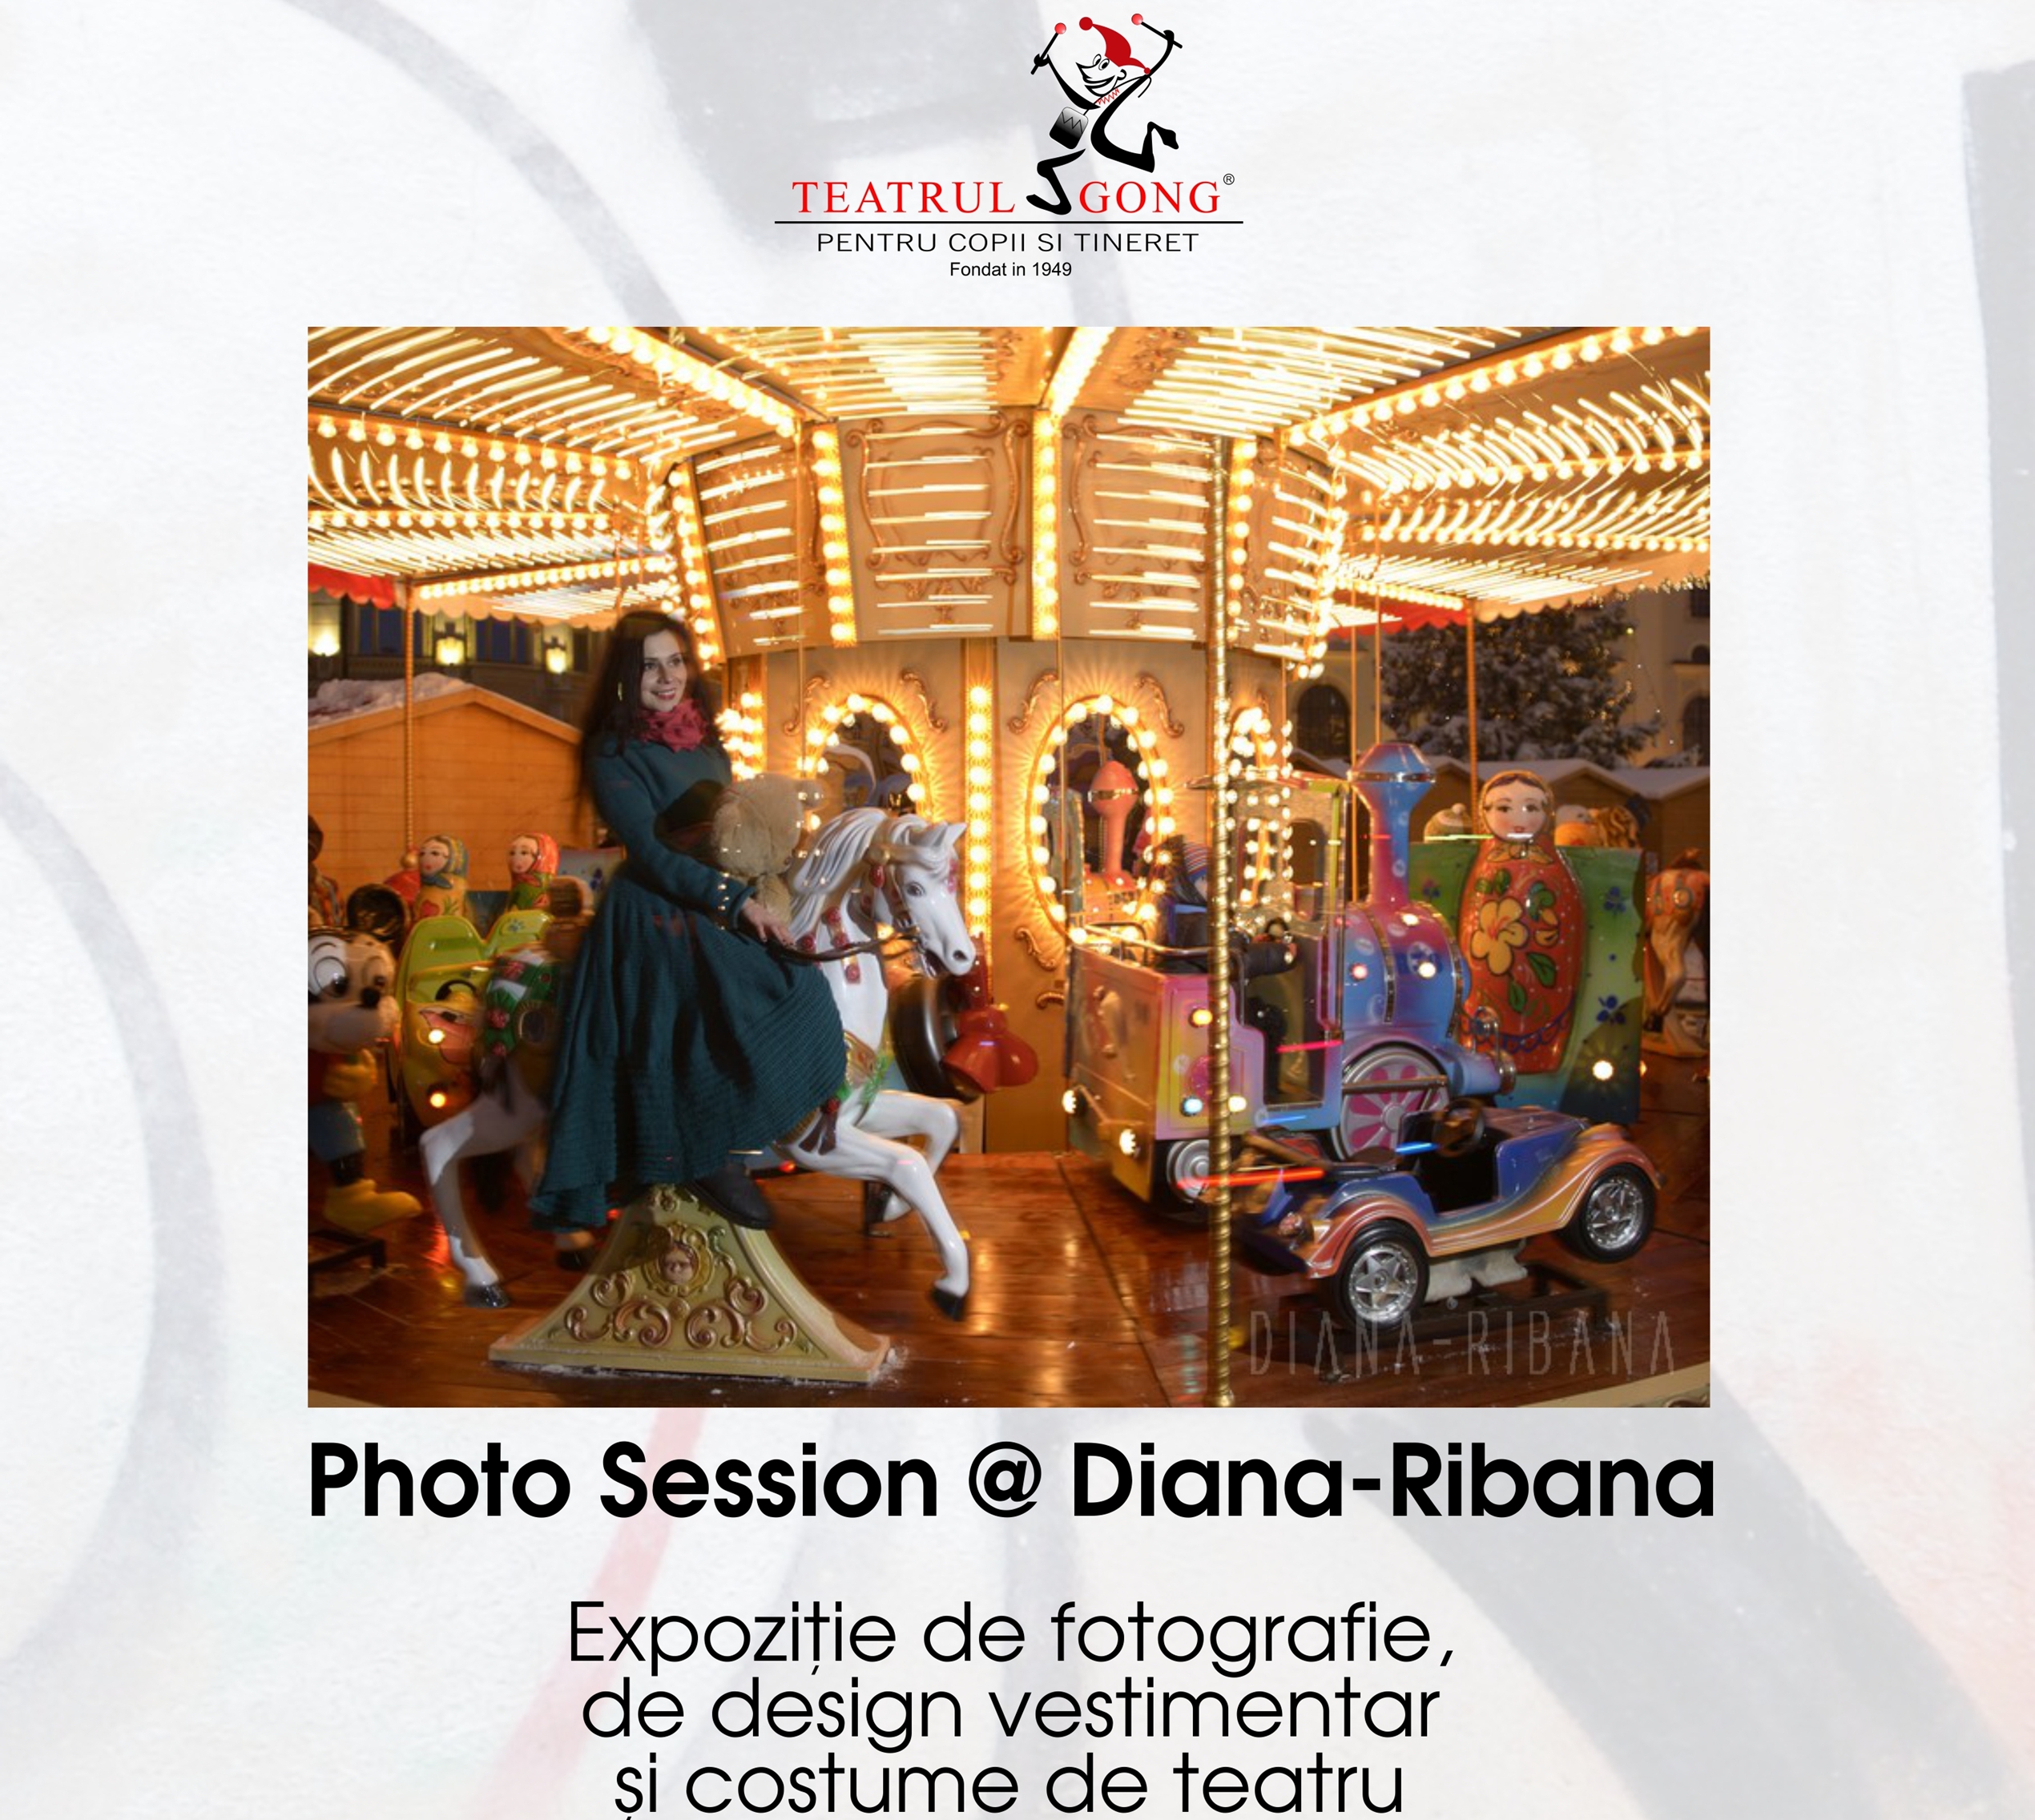 Expozitie: Photo session